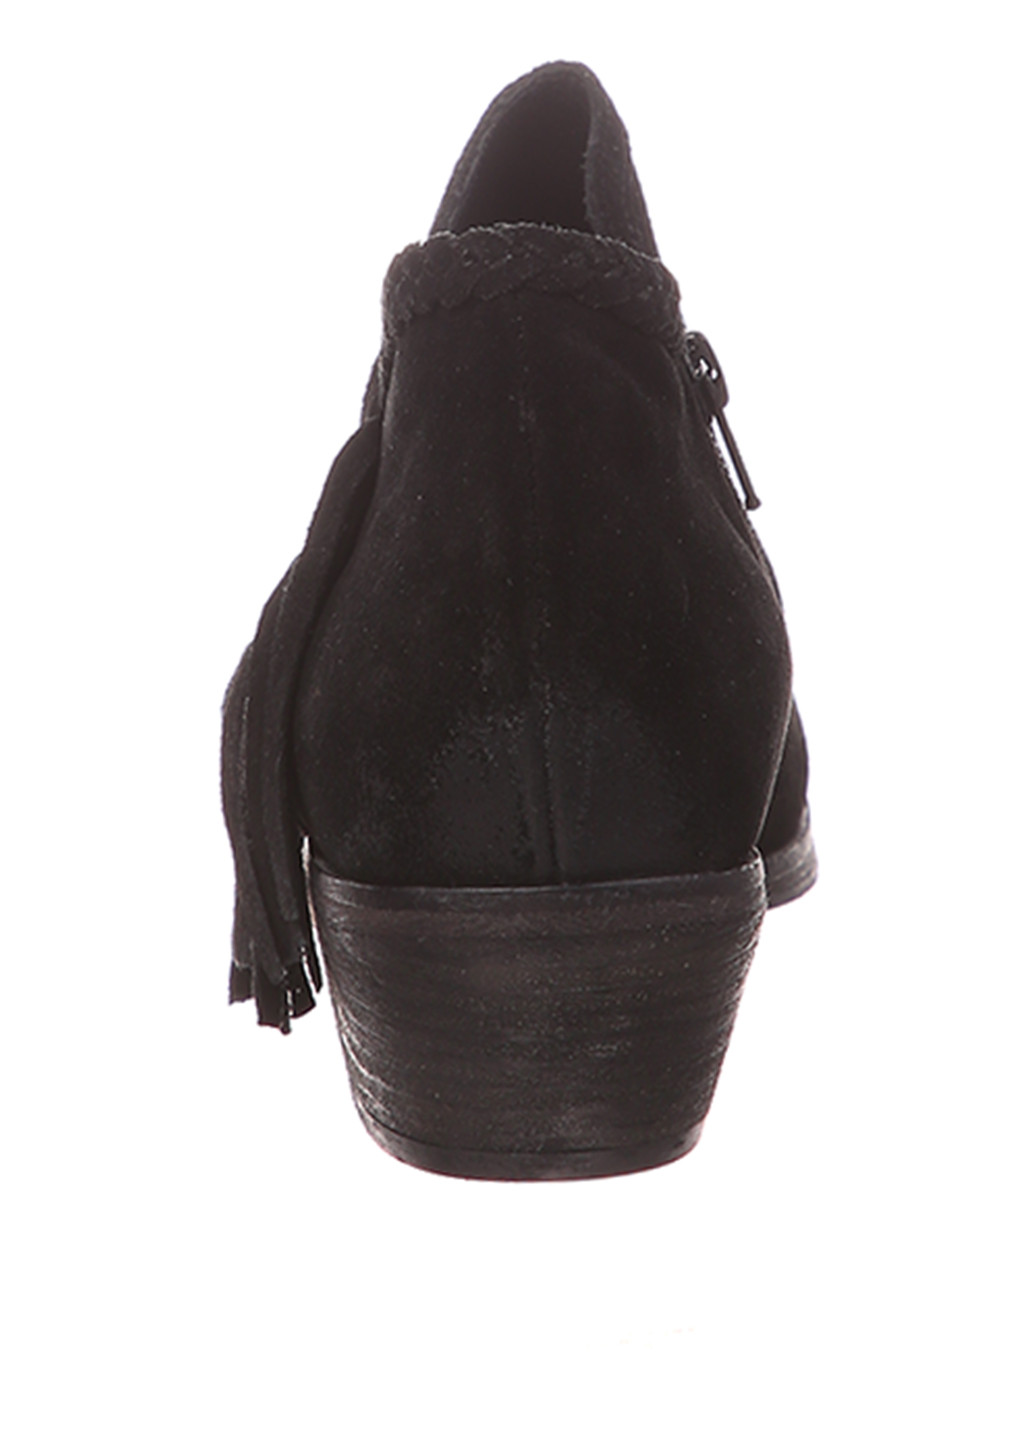 Осенние ботинки John Lewis с бахромой из натуральной замши